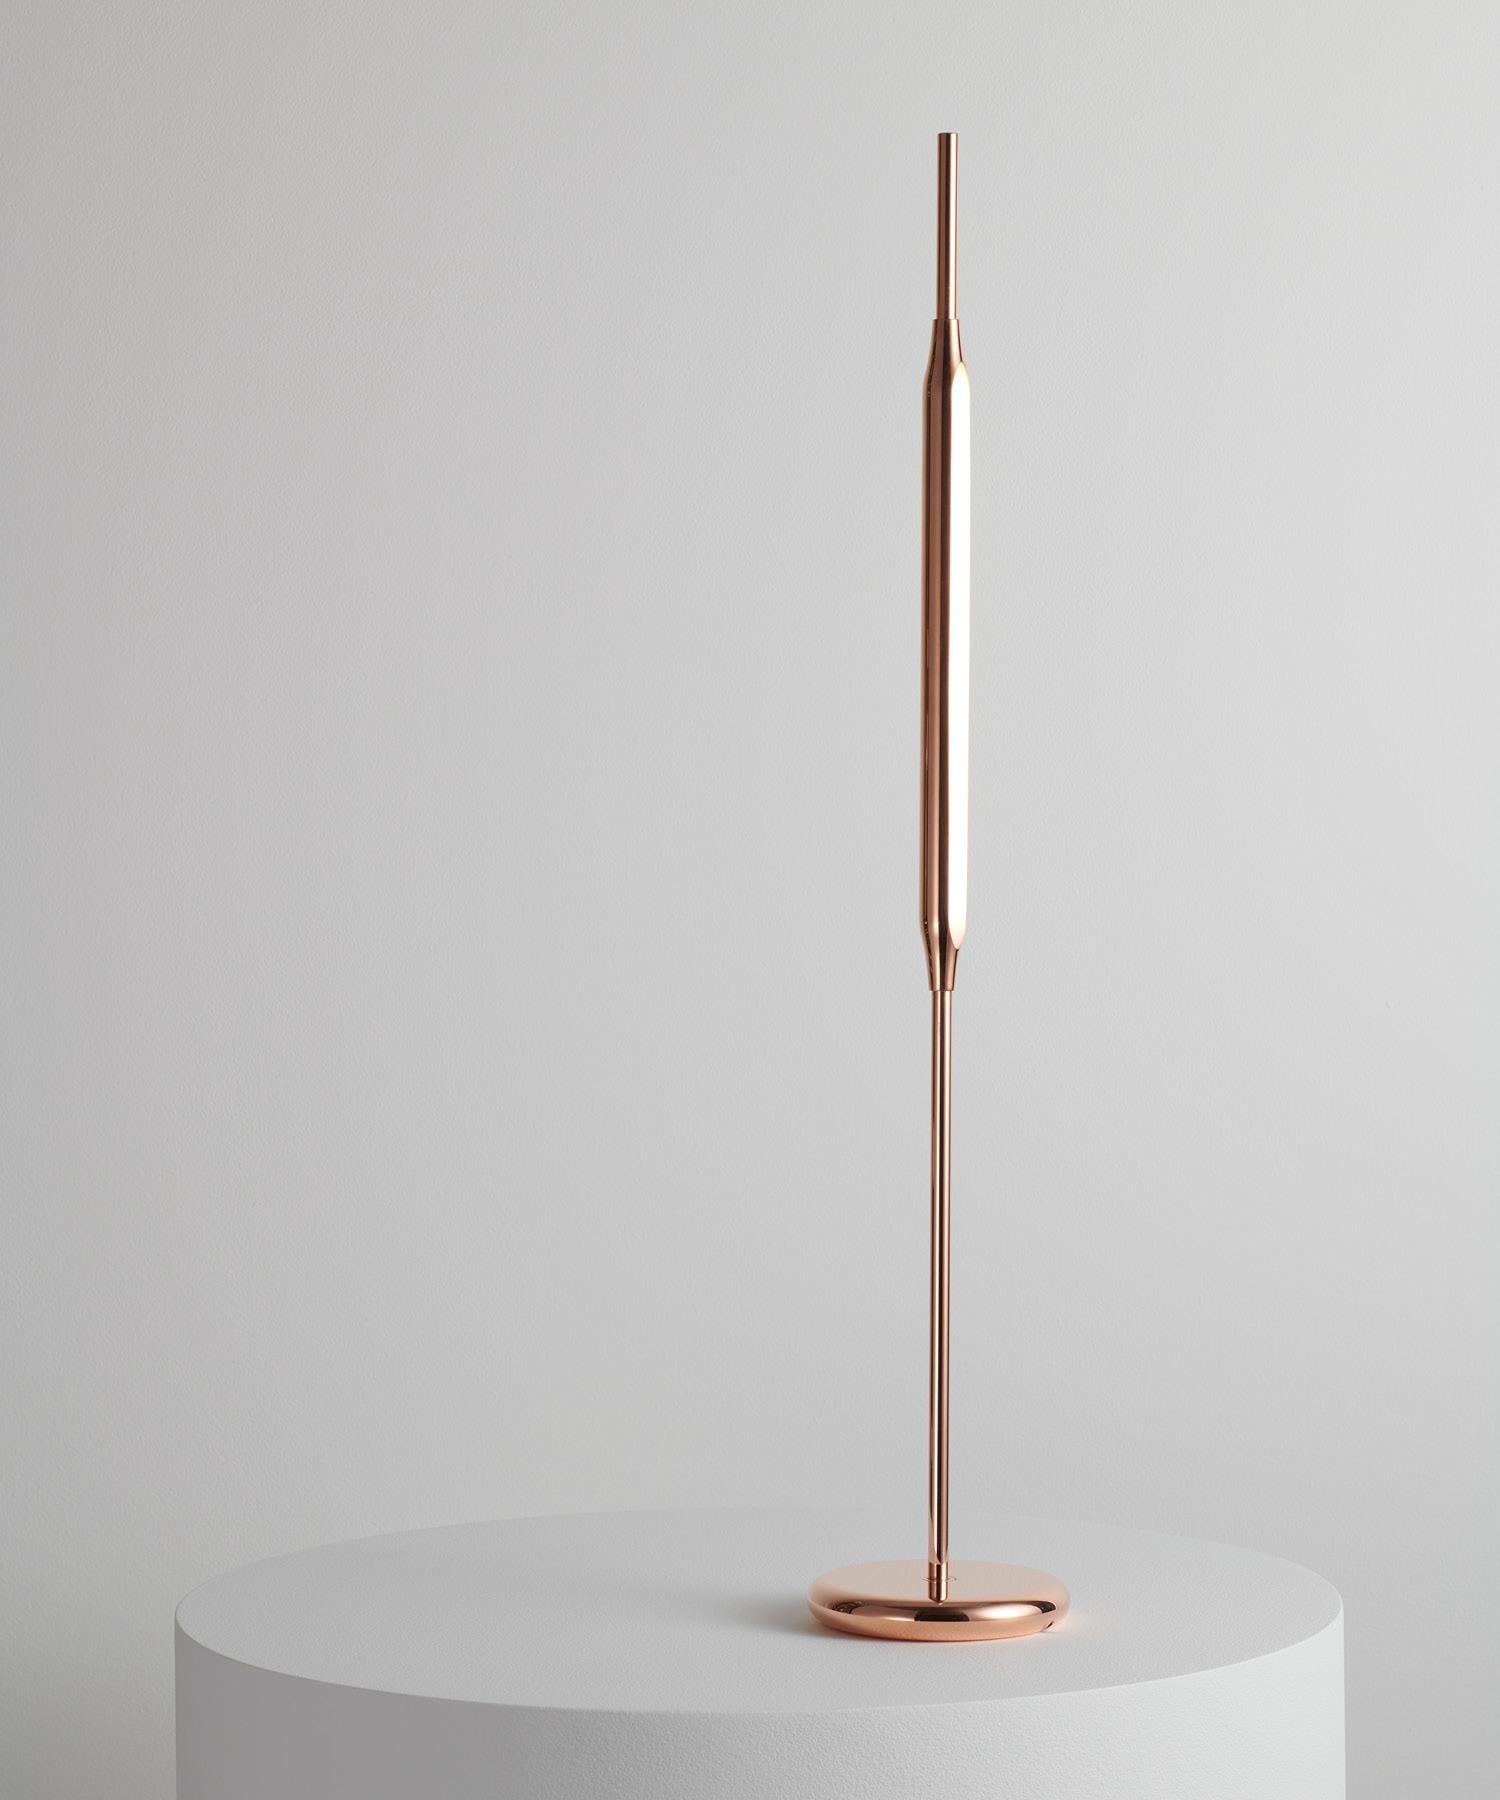 Inspirées par des formes délicates et naturelles, les lampes de table Reed sont conçues pour apporter des accents atmosphériques aux intérieurs sophistiqués.
Utilisés individuellement ou regroupés en petits groupes, ils peuvent servir d'outils pour